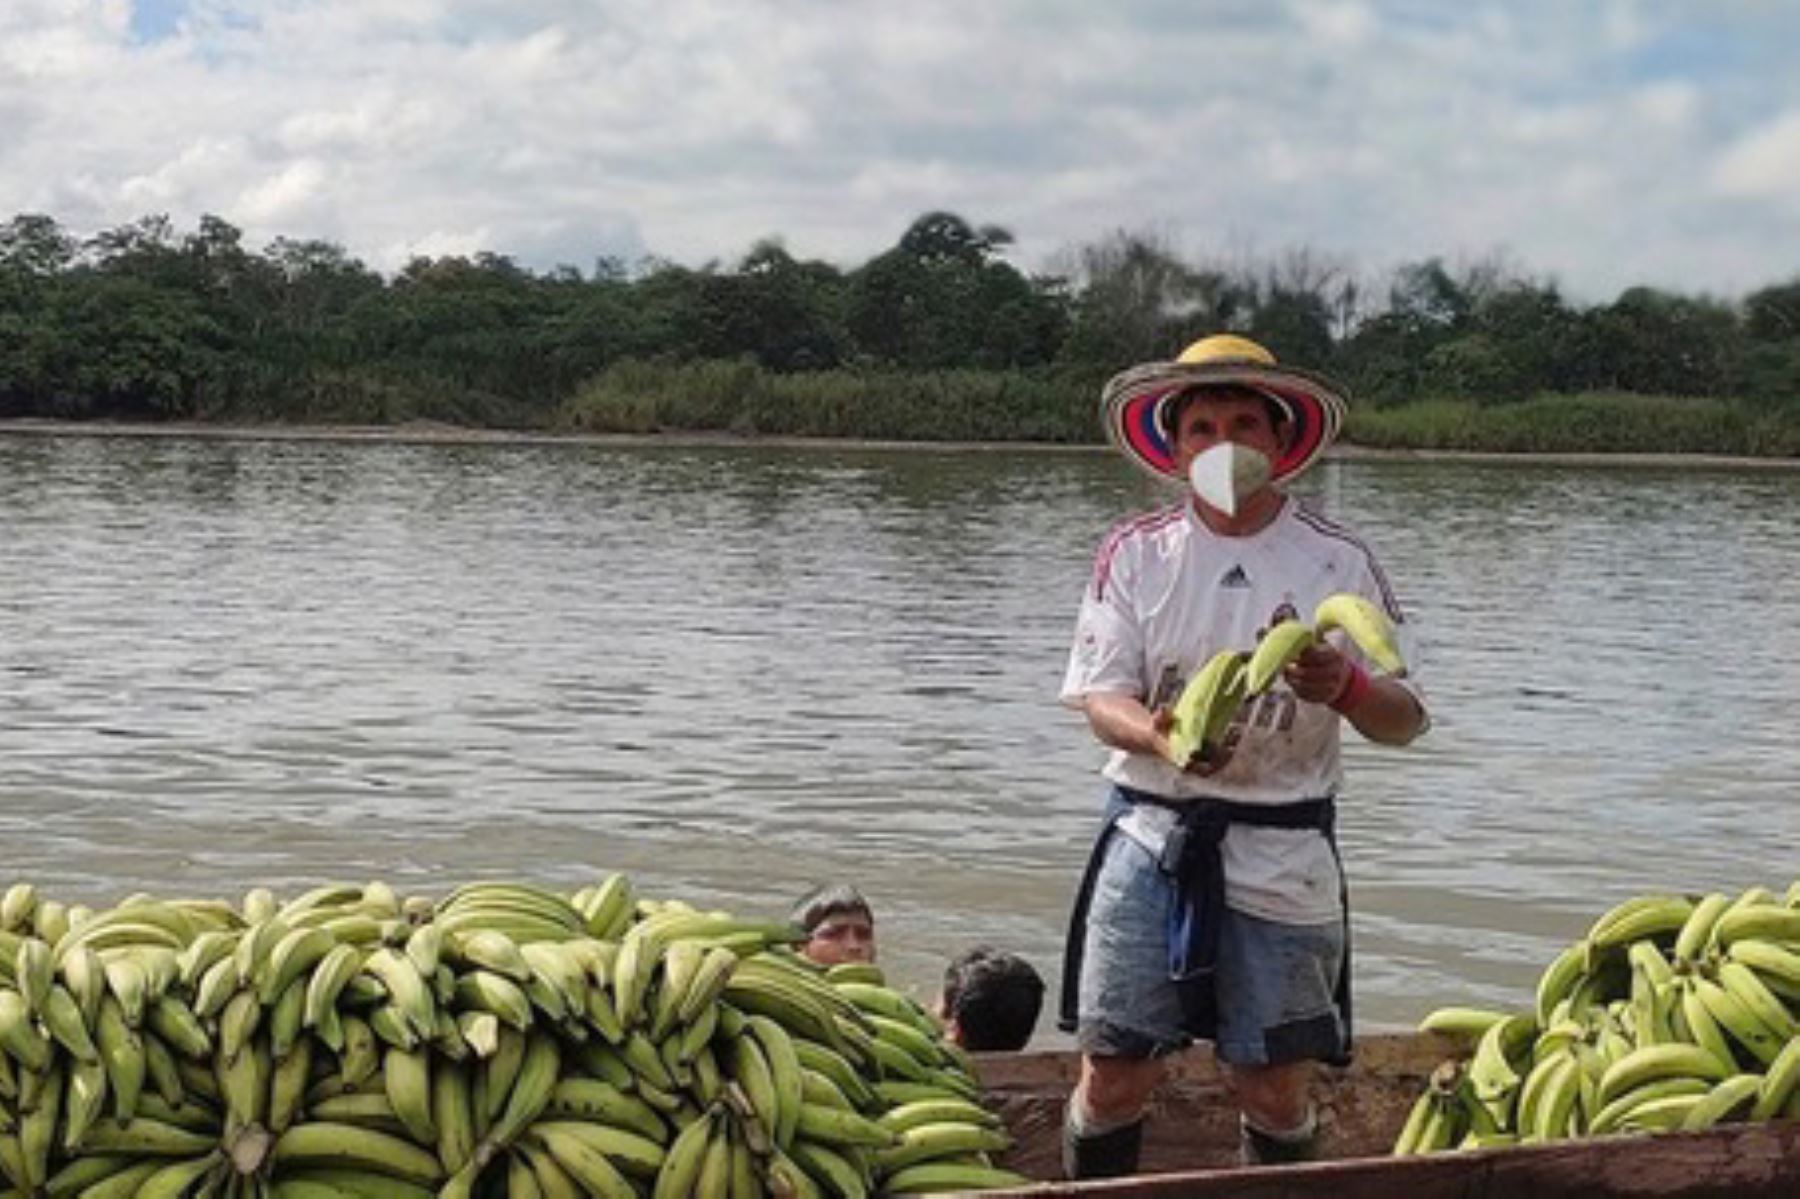 Devida promueve la articulación de productos como el cacao o el café en la provincia de Padre Abad, región Ucayali. Foto: ANDINA/Devida